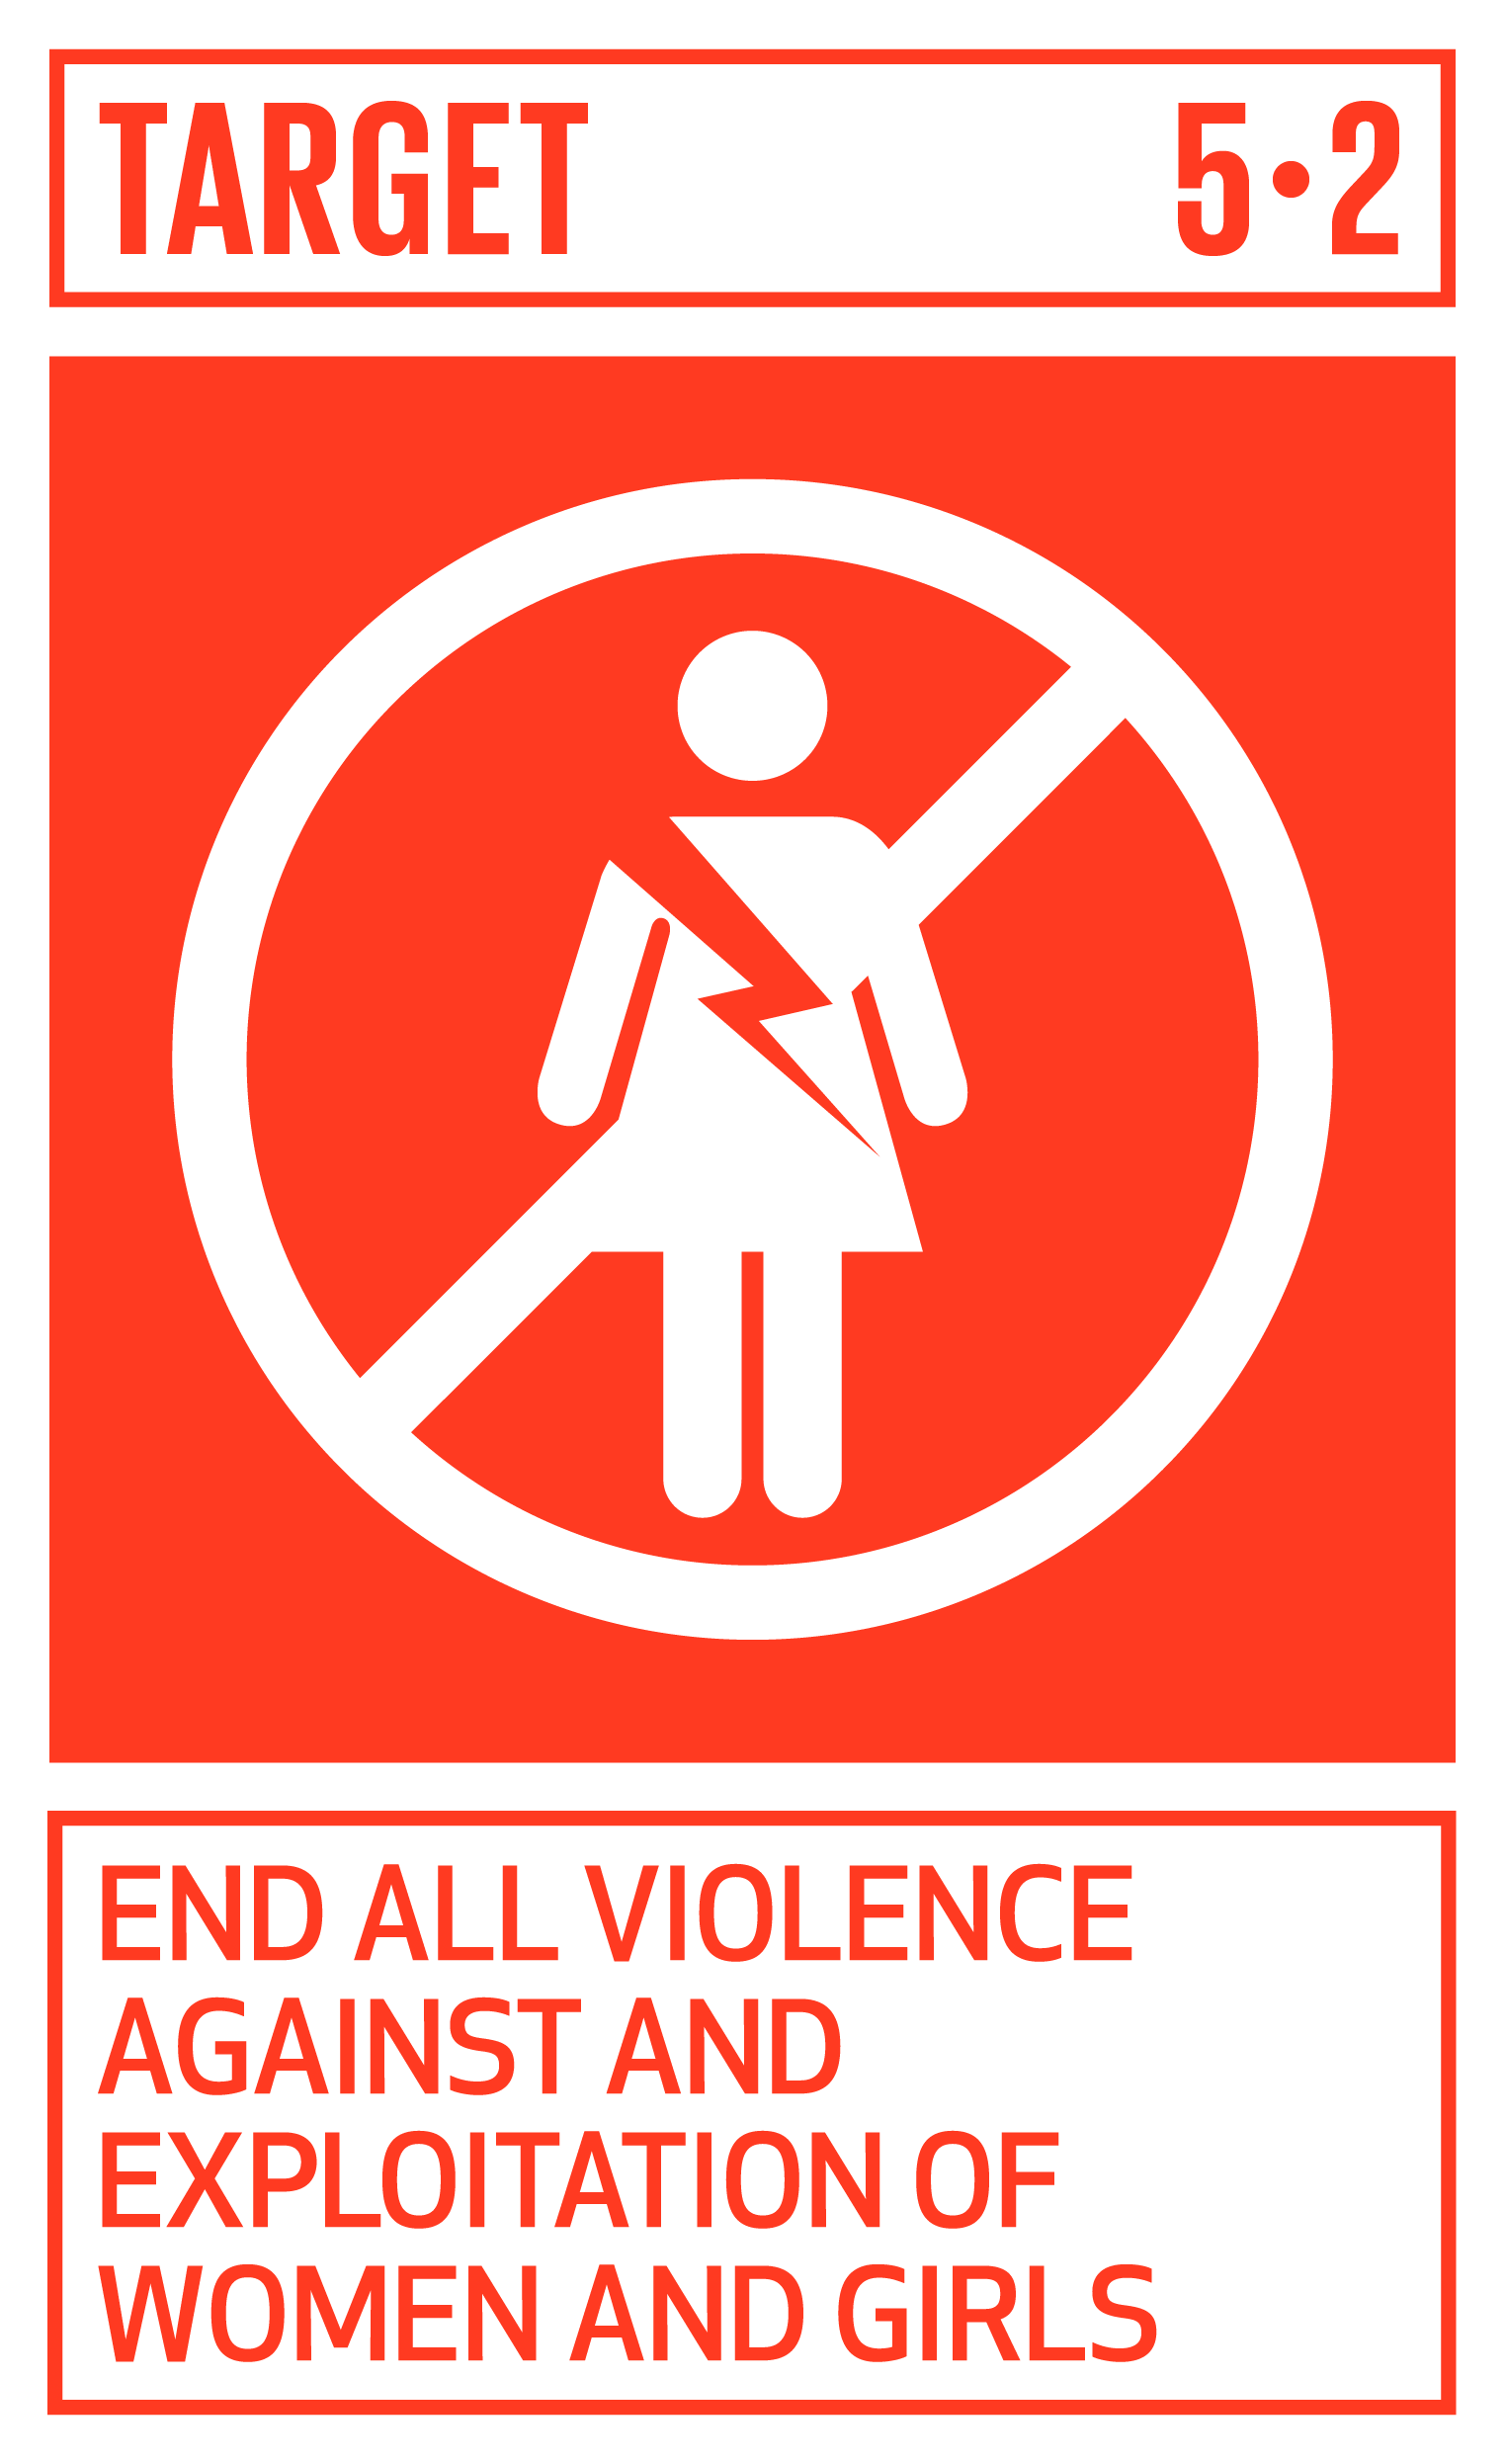 Goal,target,永續發展目標SDGs5,目標5.2結束對女性的一切暴力和剝削